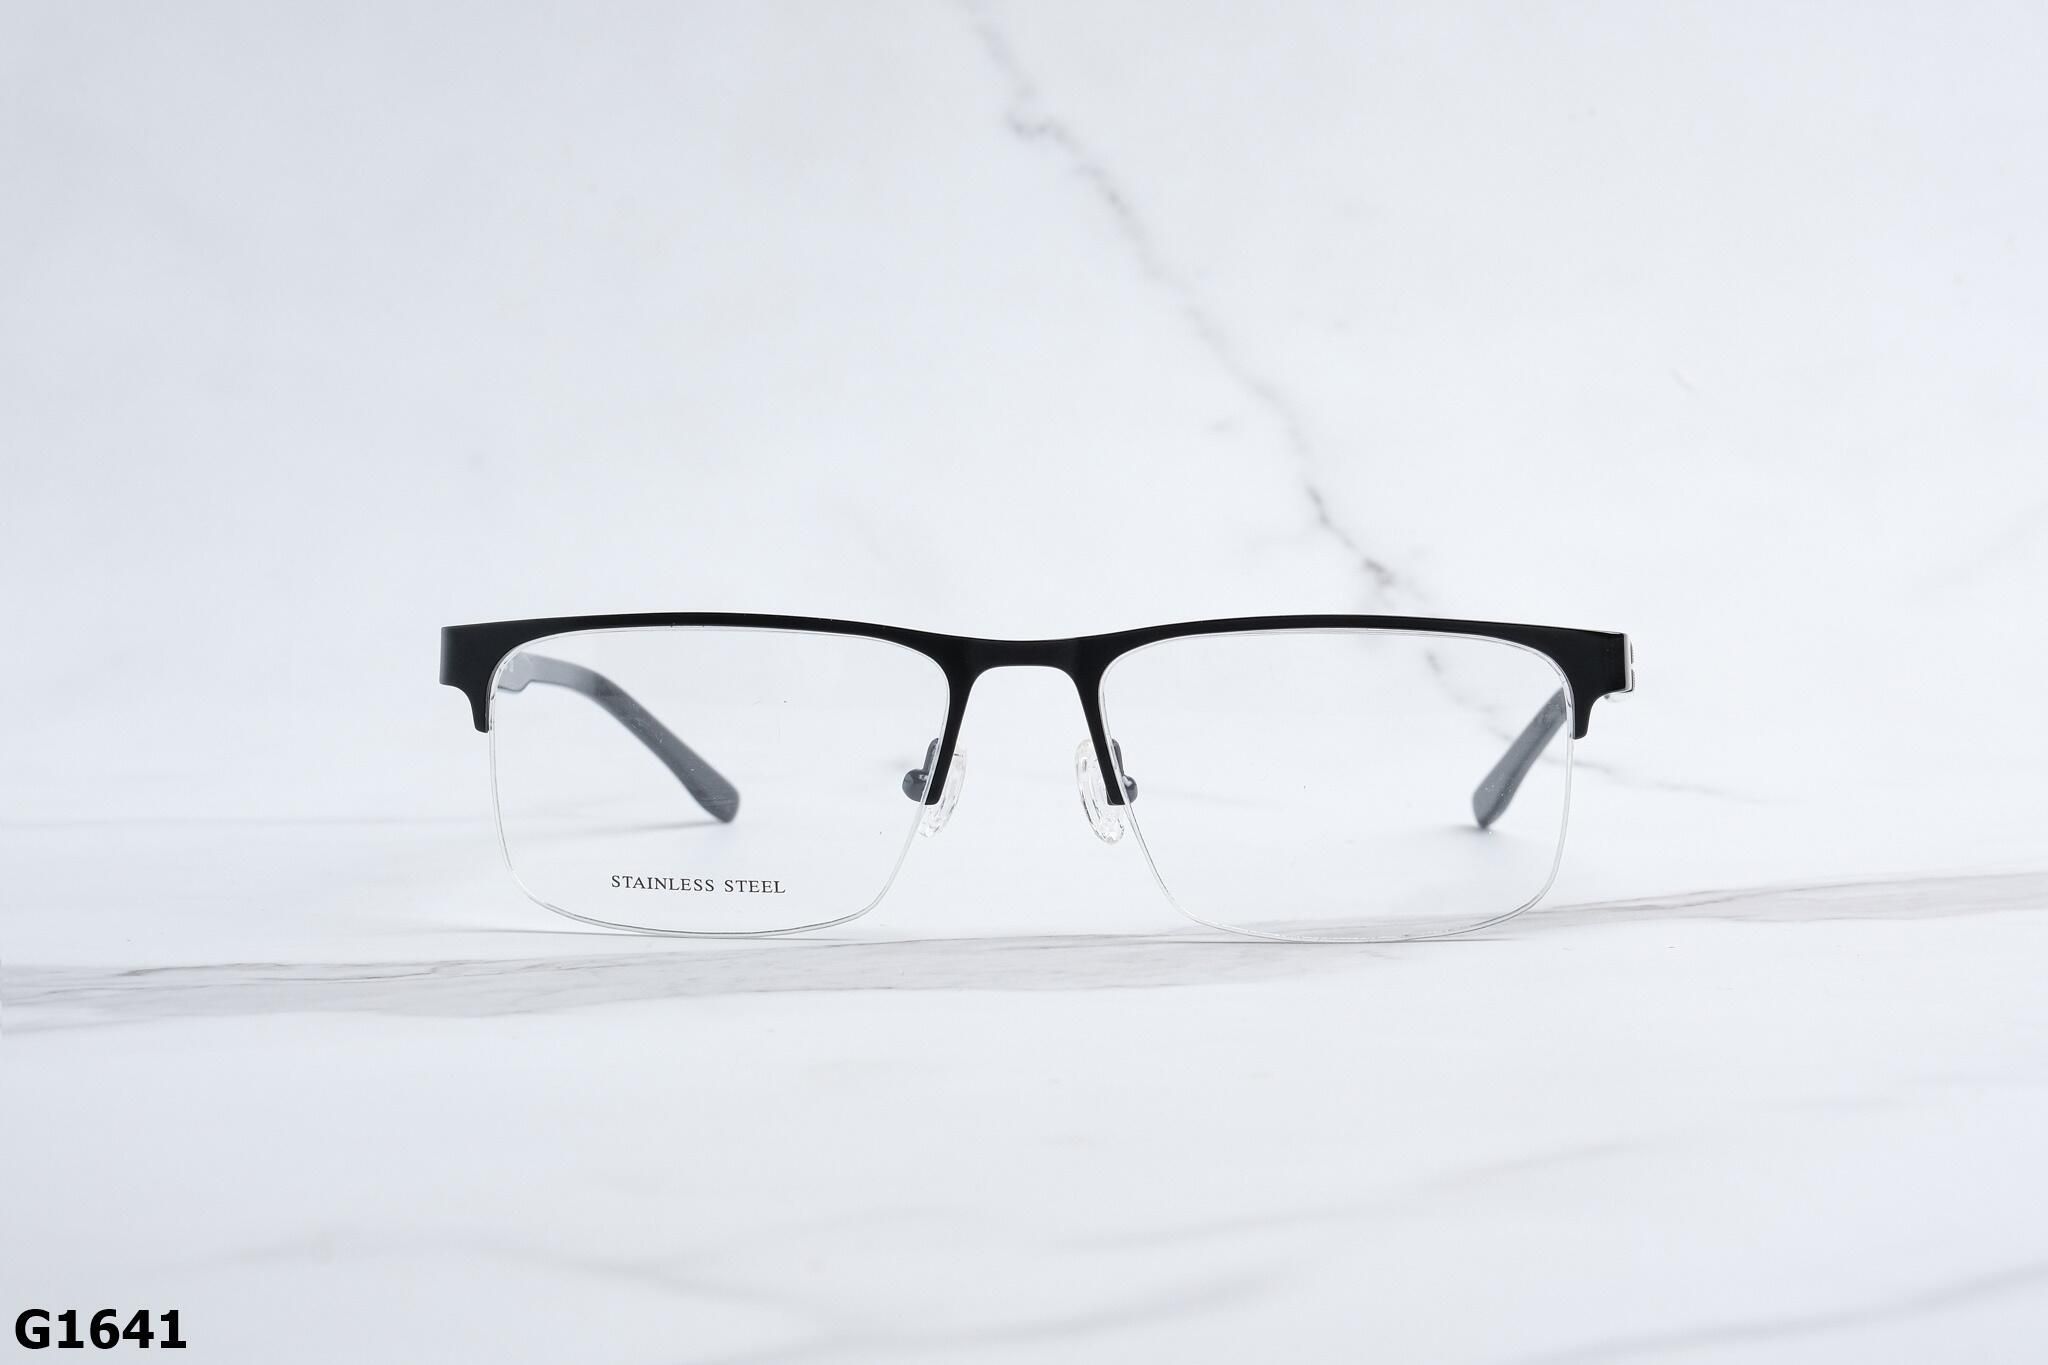  Rex-ton Eyewear - Glasses - G1641 